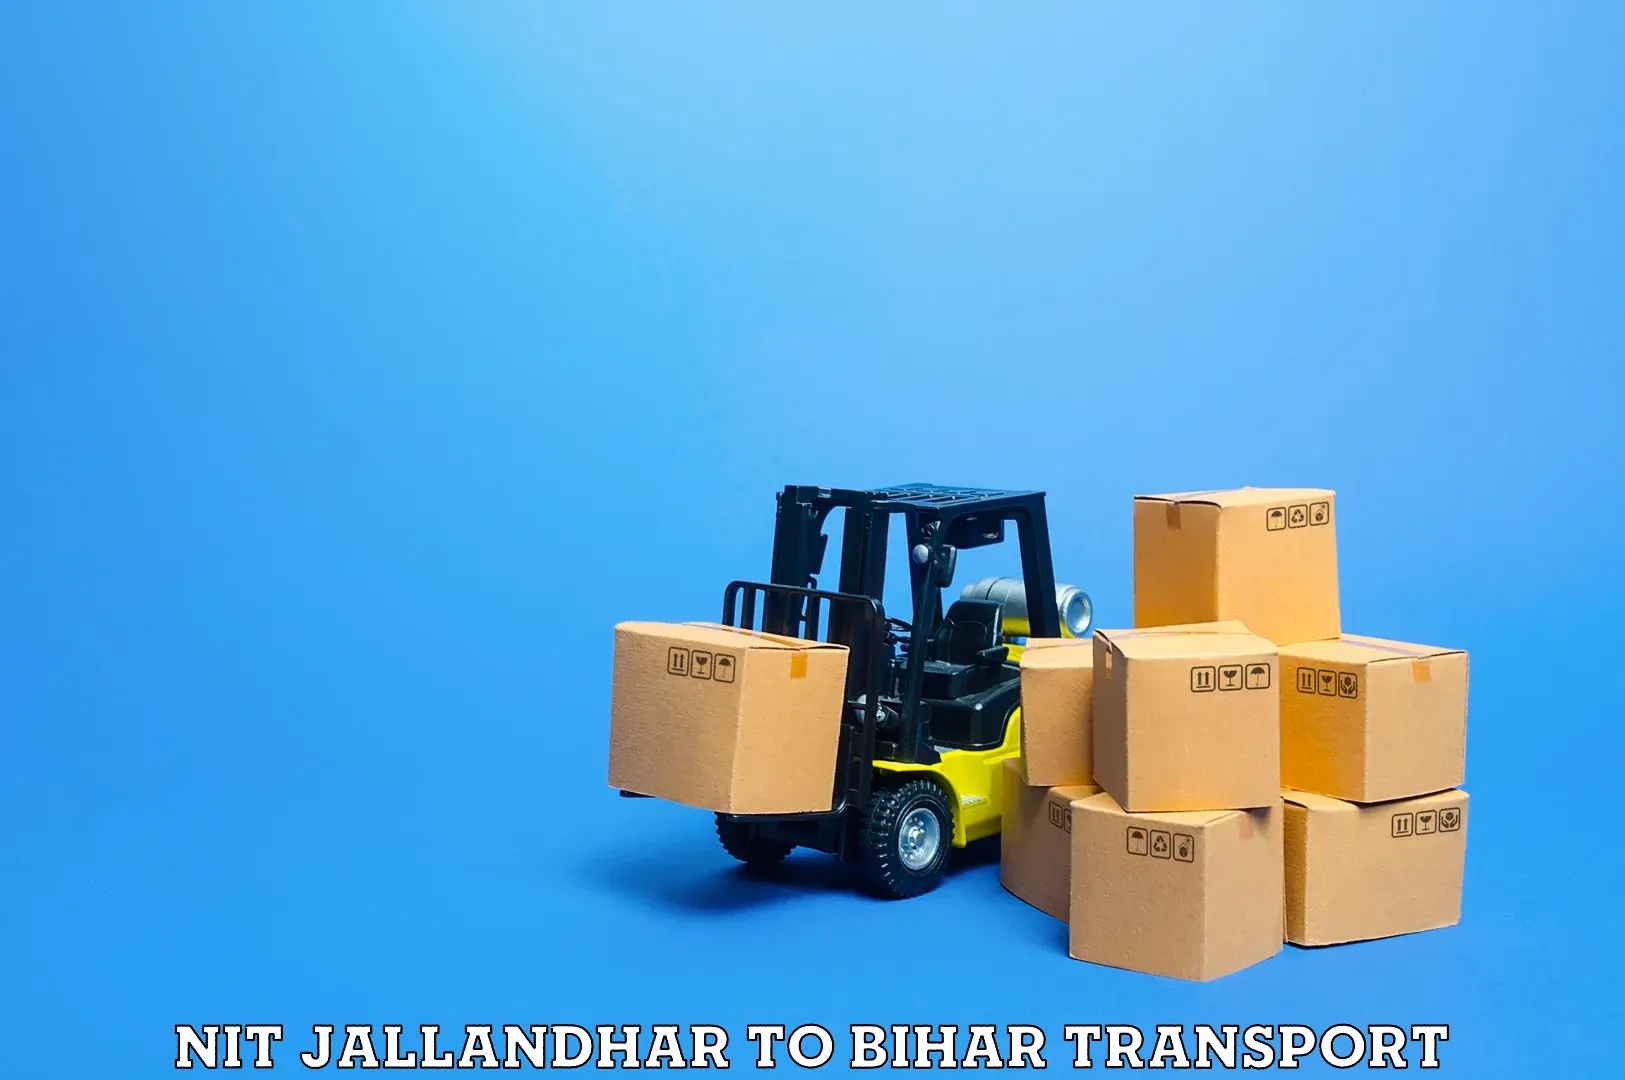 Commercial transport service NIT Jallandhar to Kudra